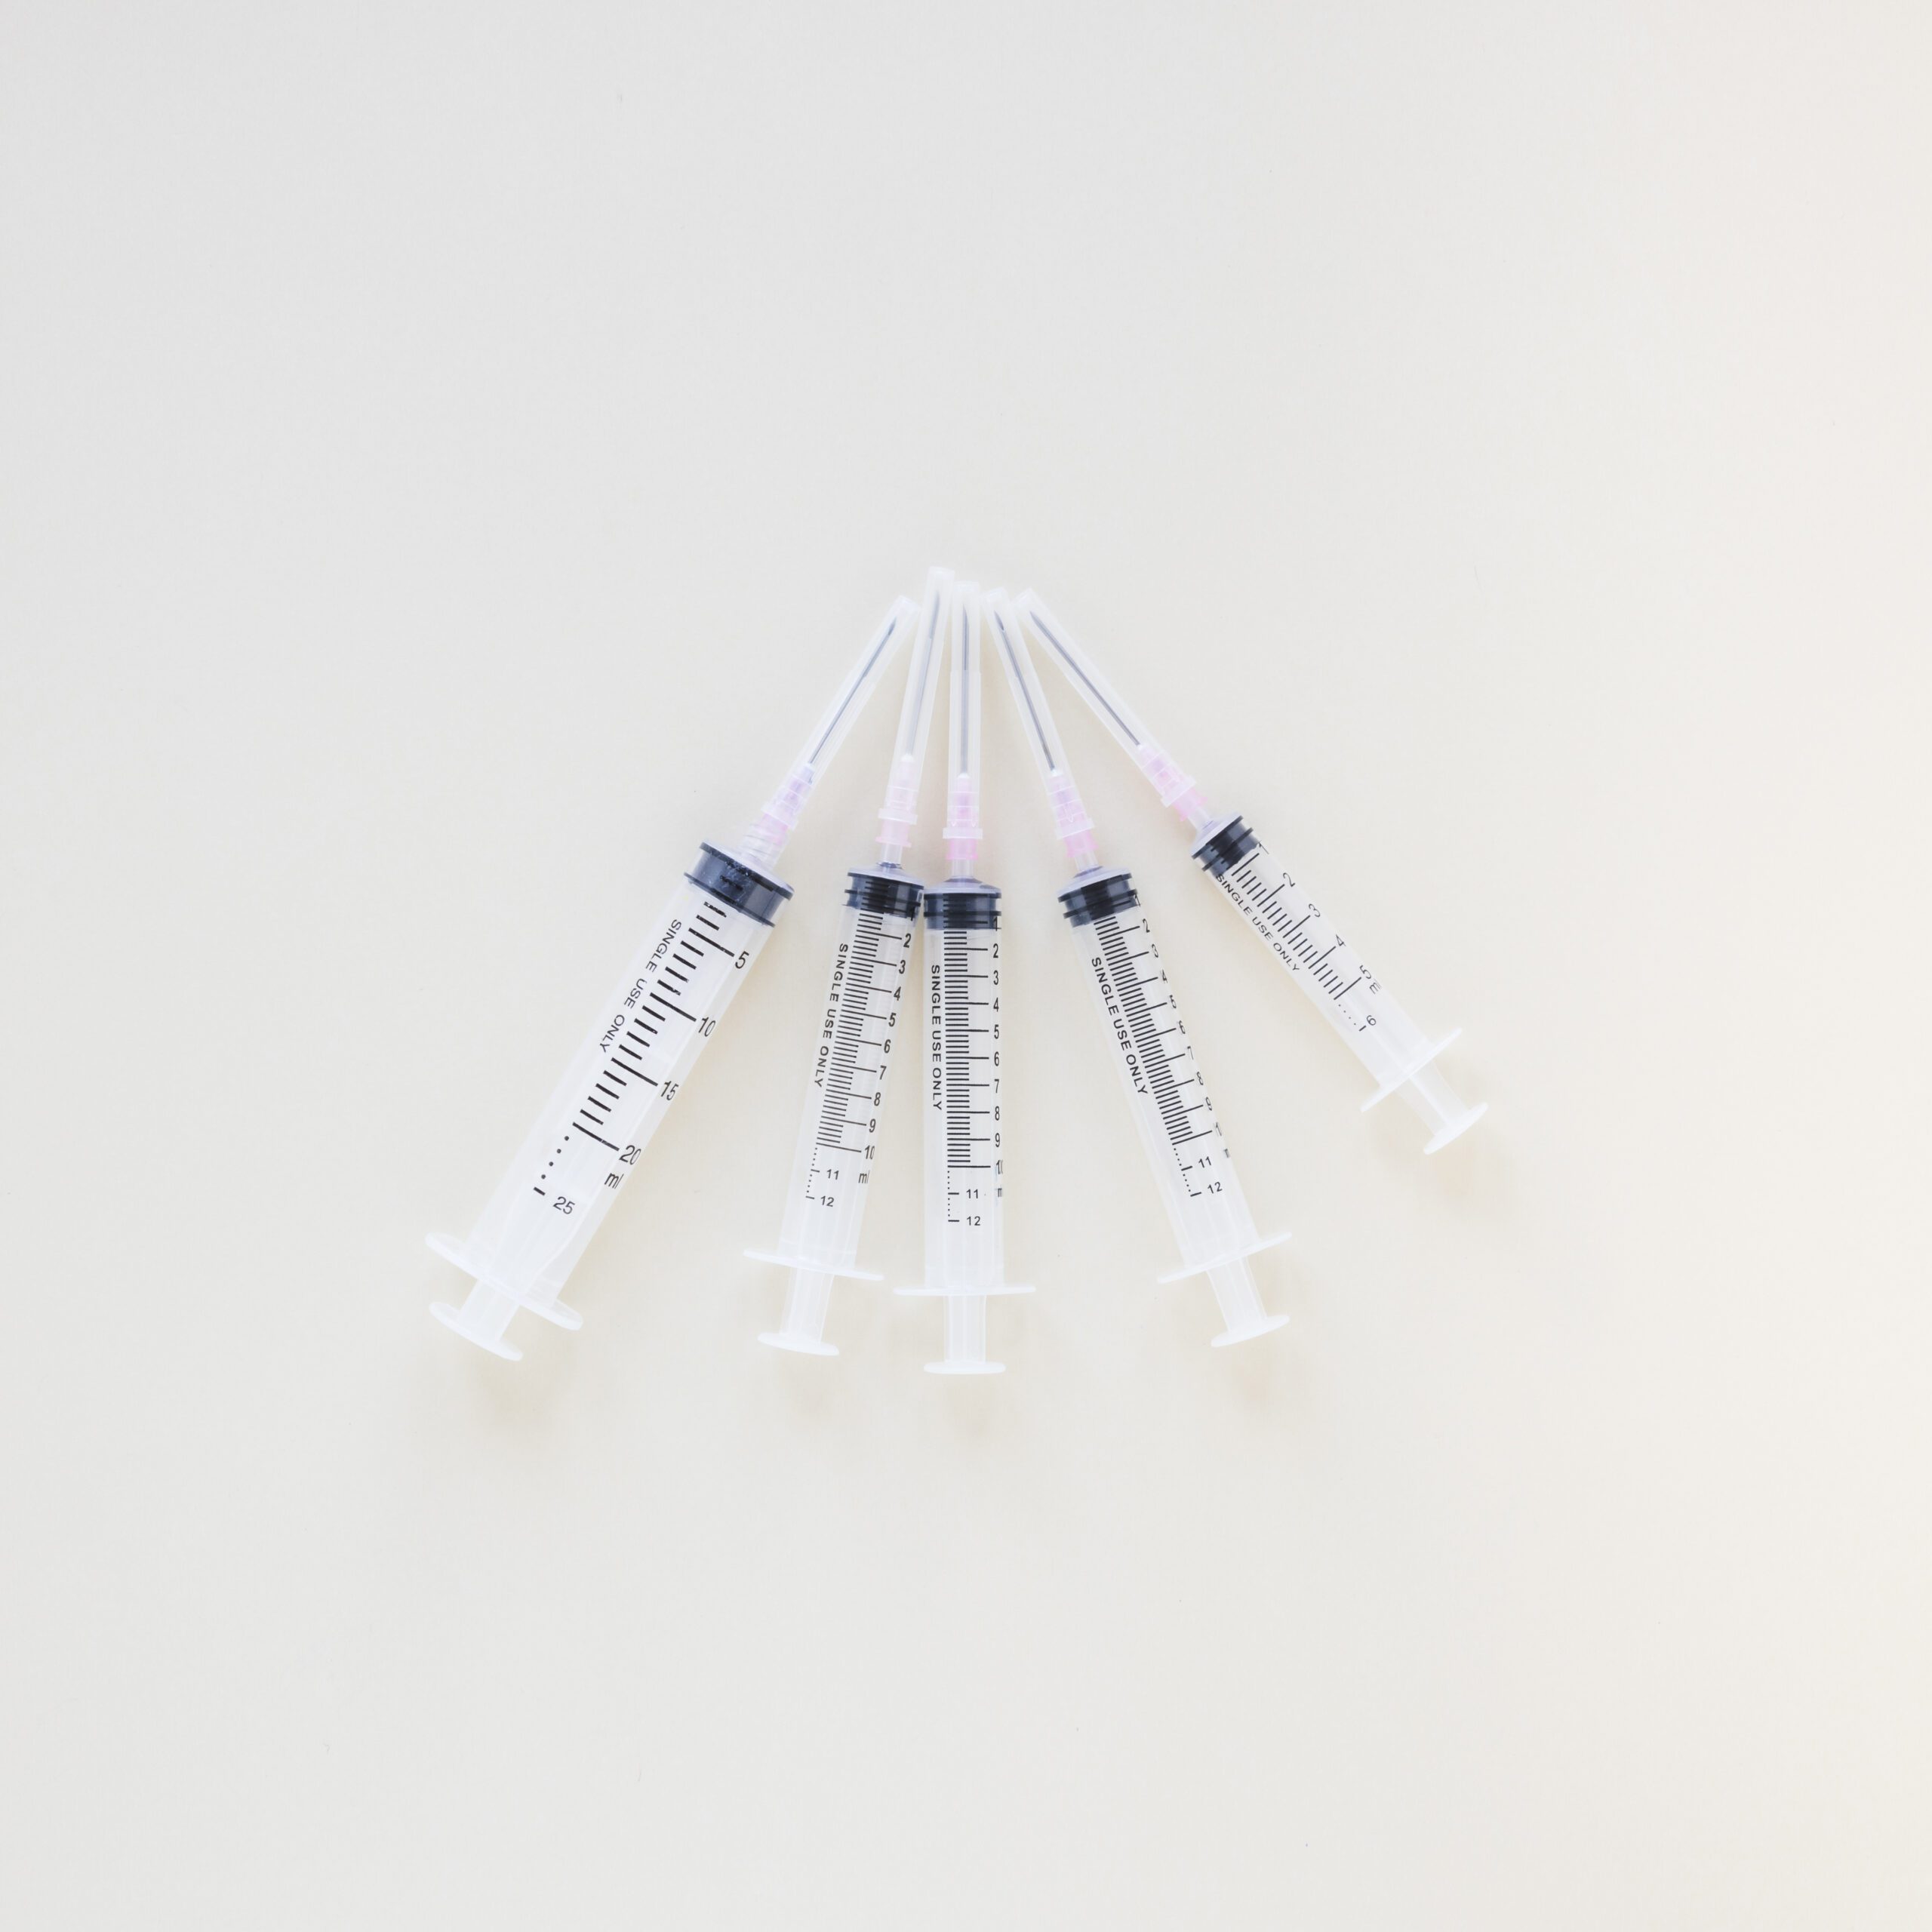 Phlebotomy Needle Gauges